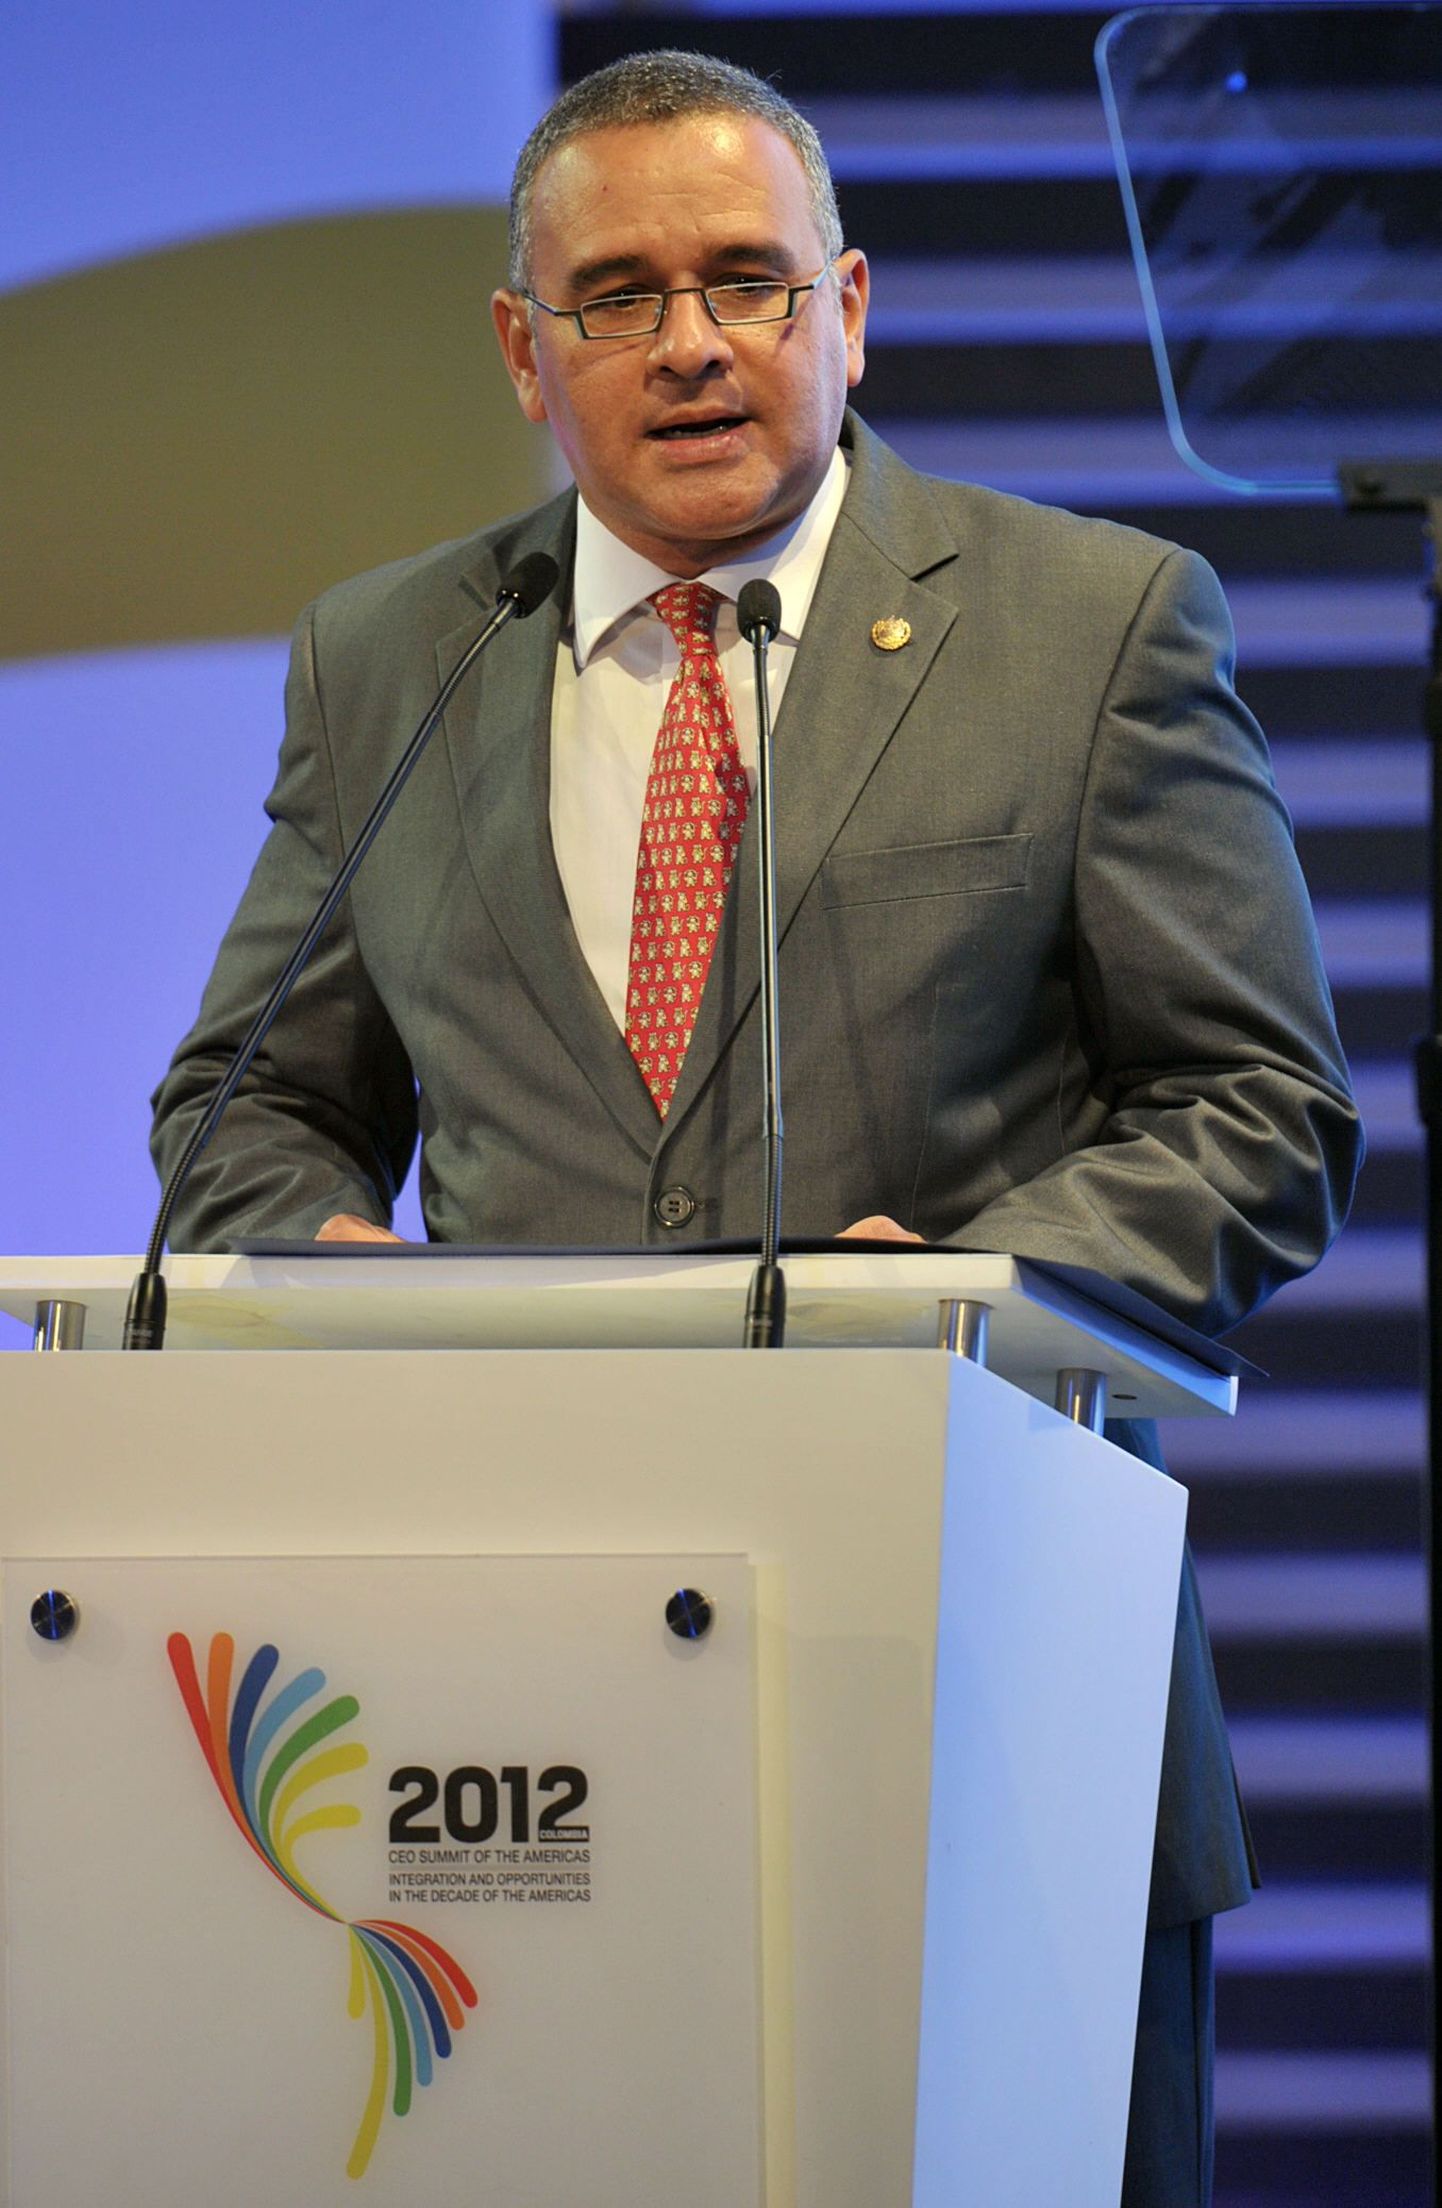 El Salvadori president Mauricio Funes